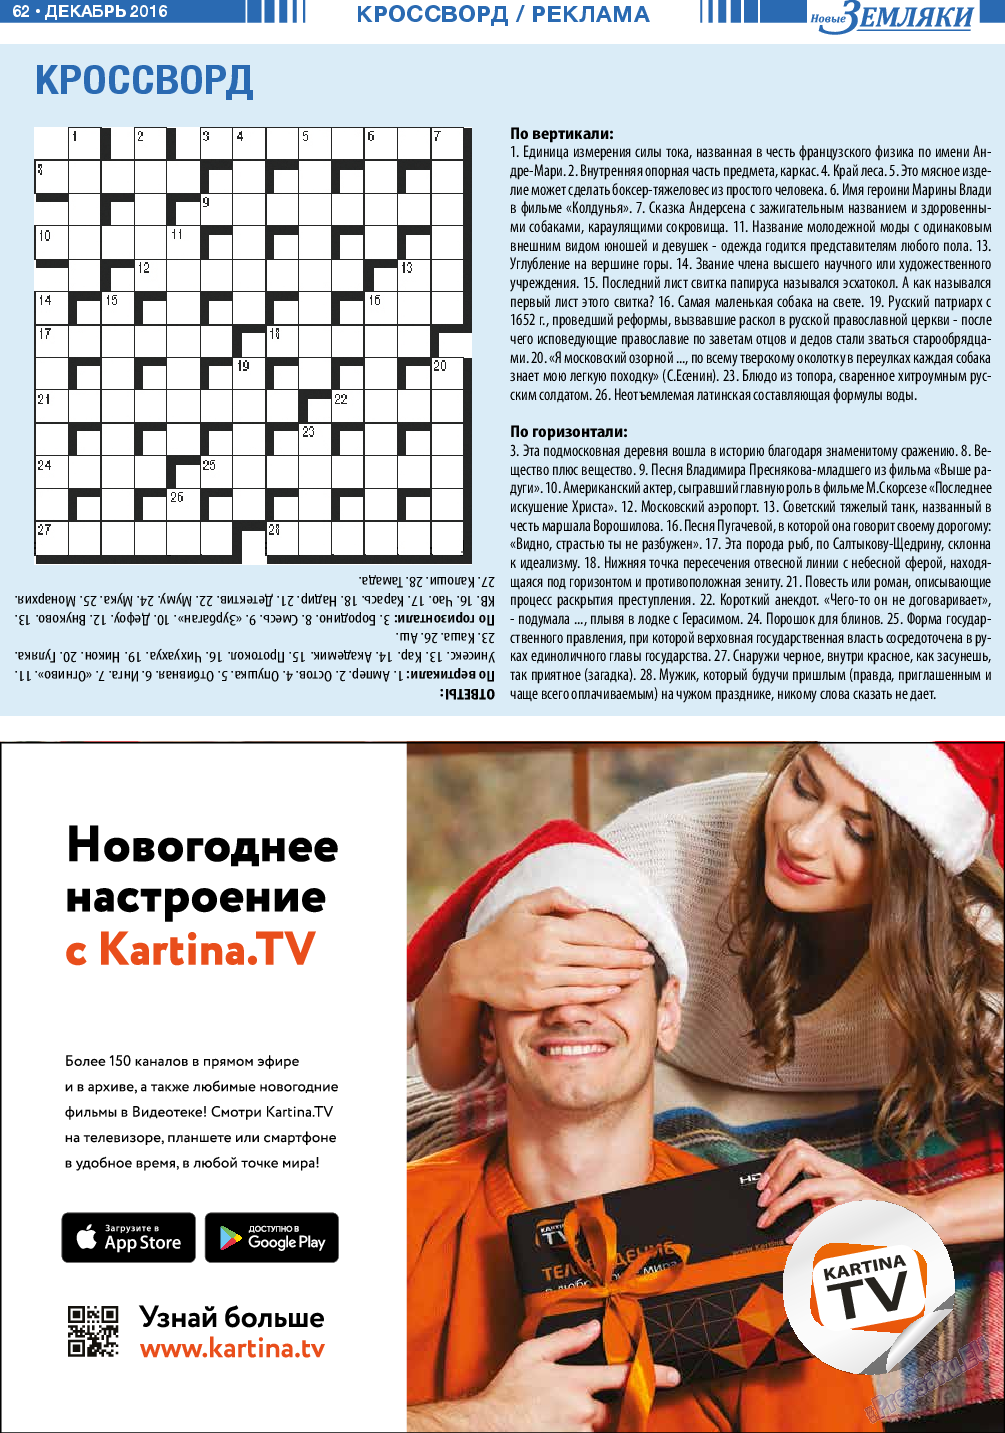 Новые Земляки (газета). 2016 год, номер 12, стр. 62